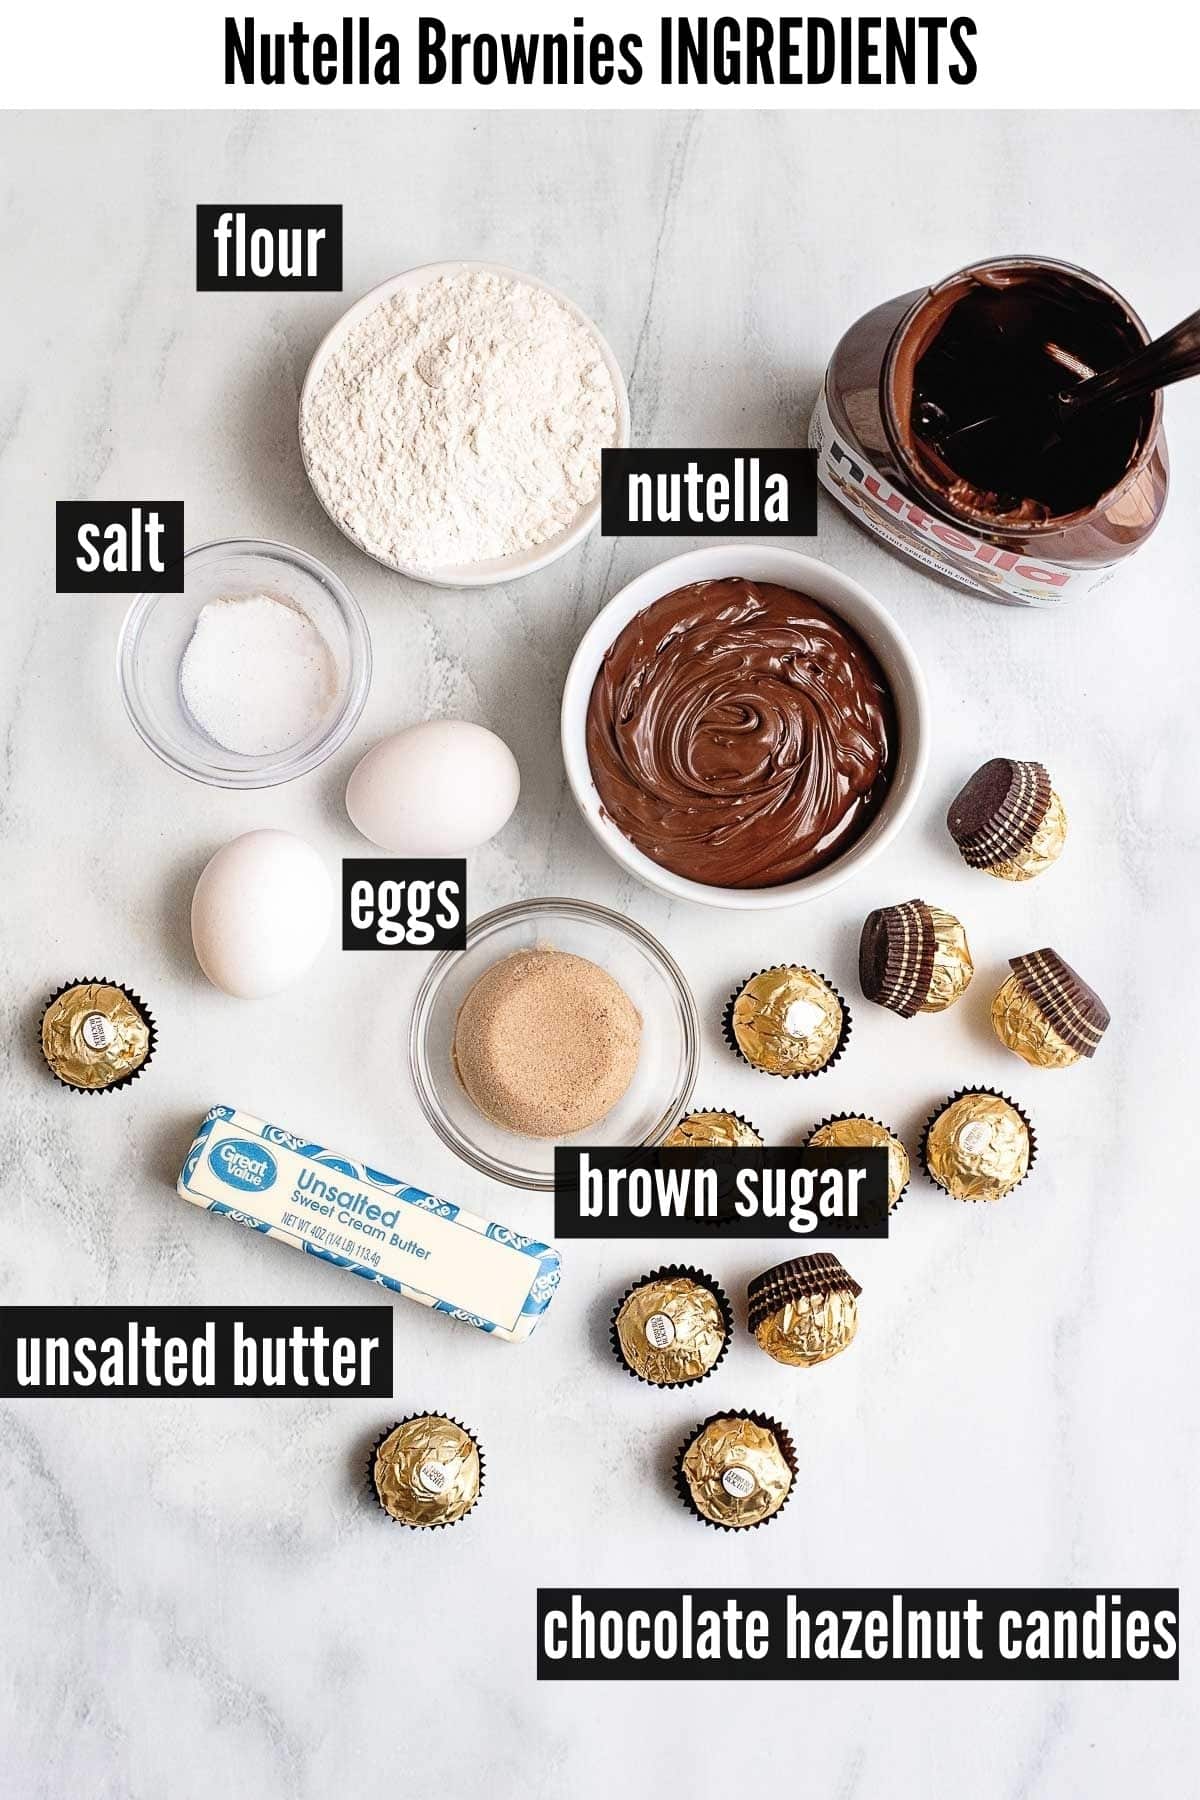 nutella brownies labelled ingredients